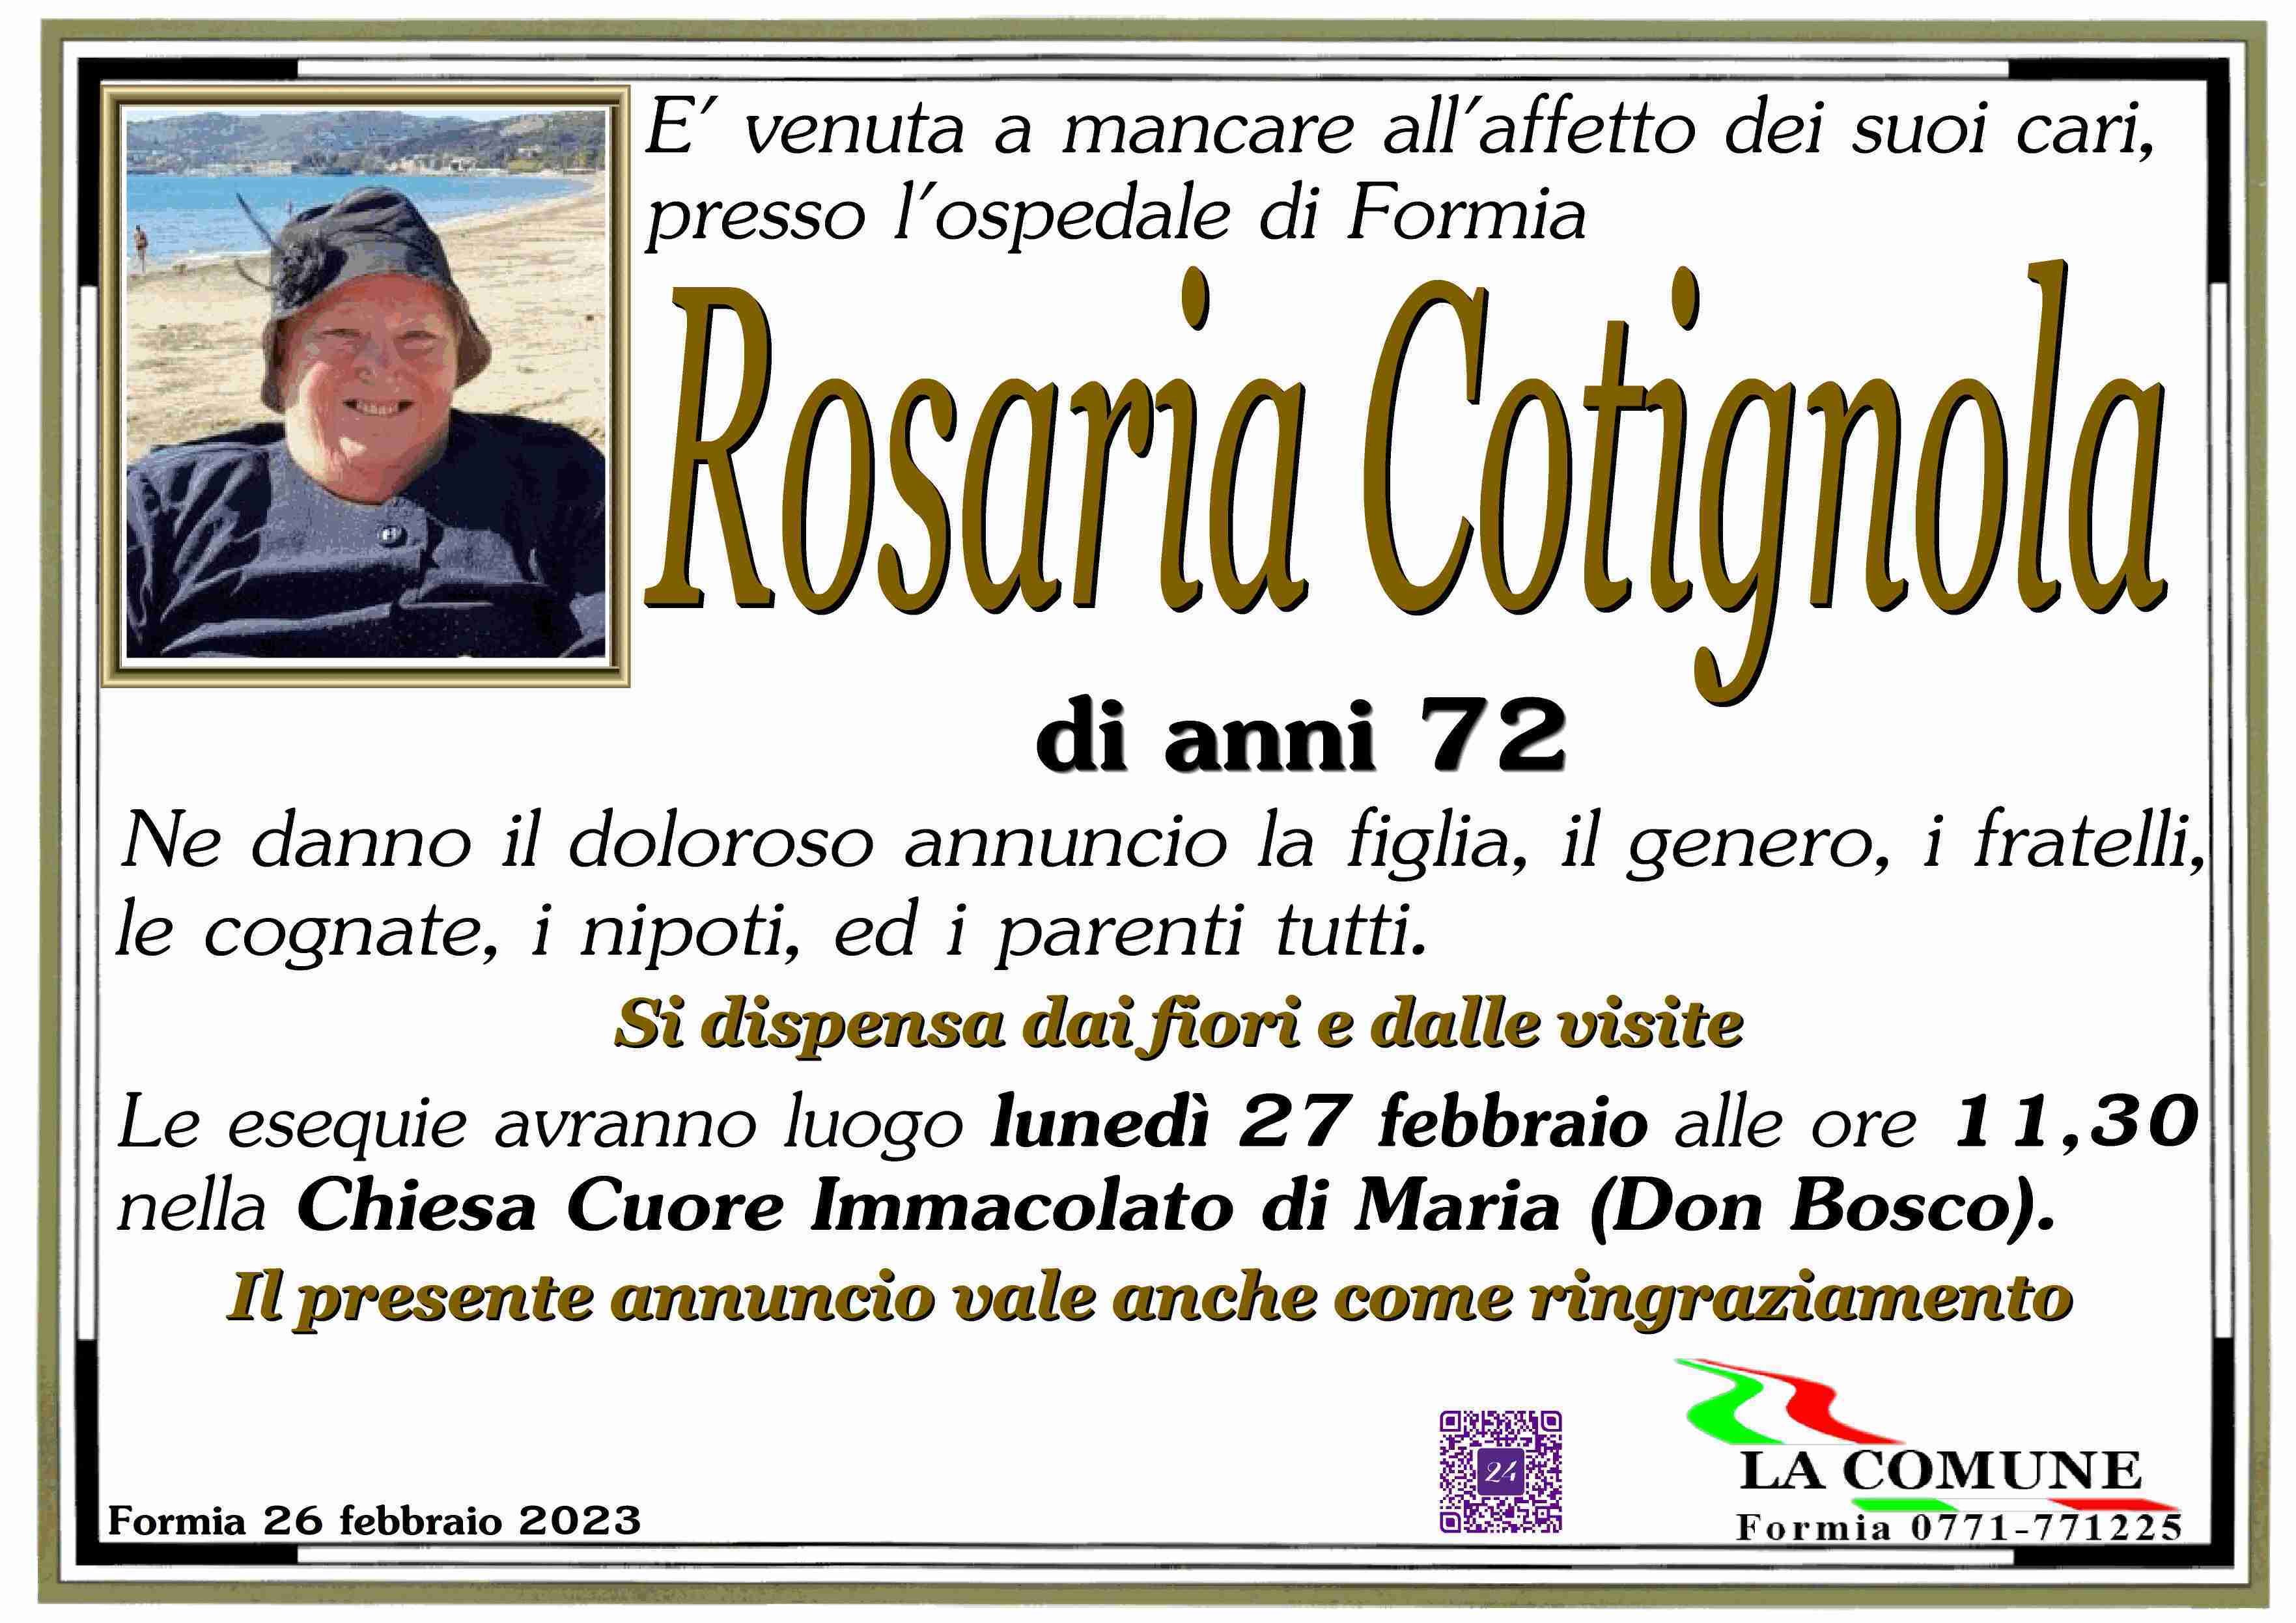 Rosaria Cotignola